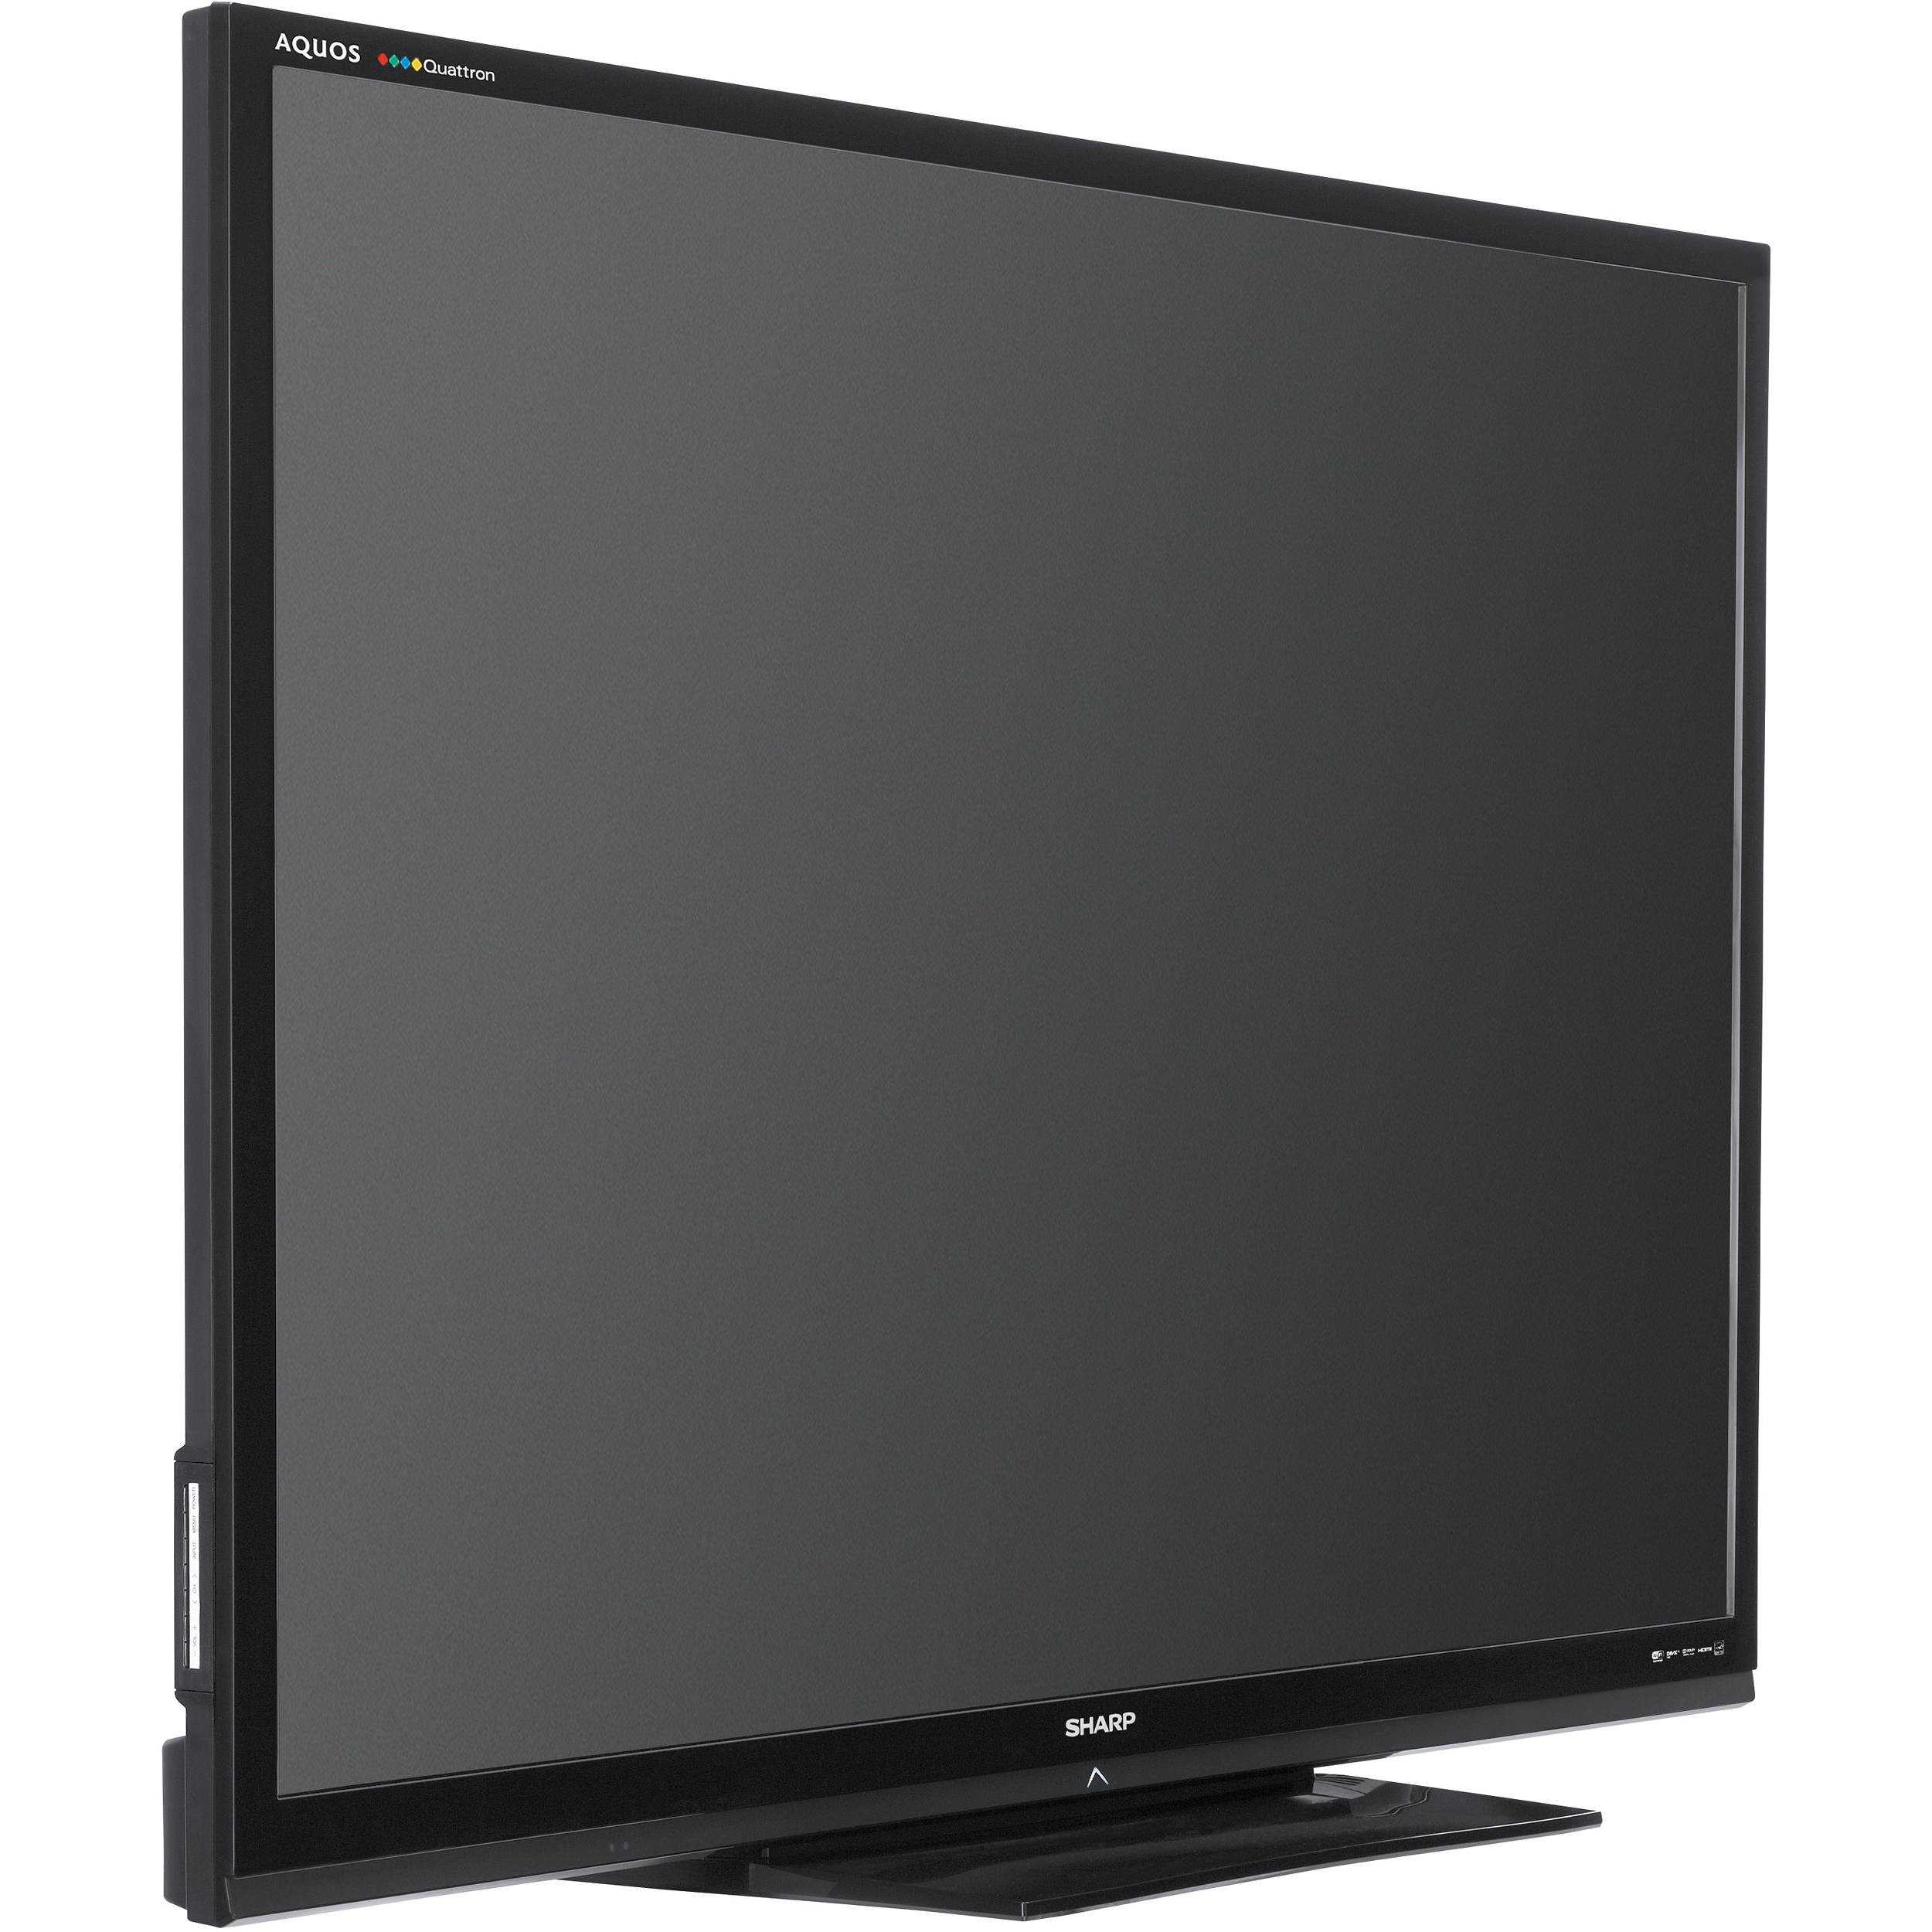 Sharp lc-80le844 - купить , скидки, цена, отзывы, обзор, характеристики - телевизоры